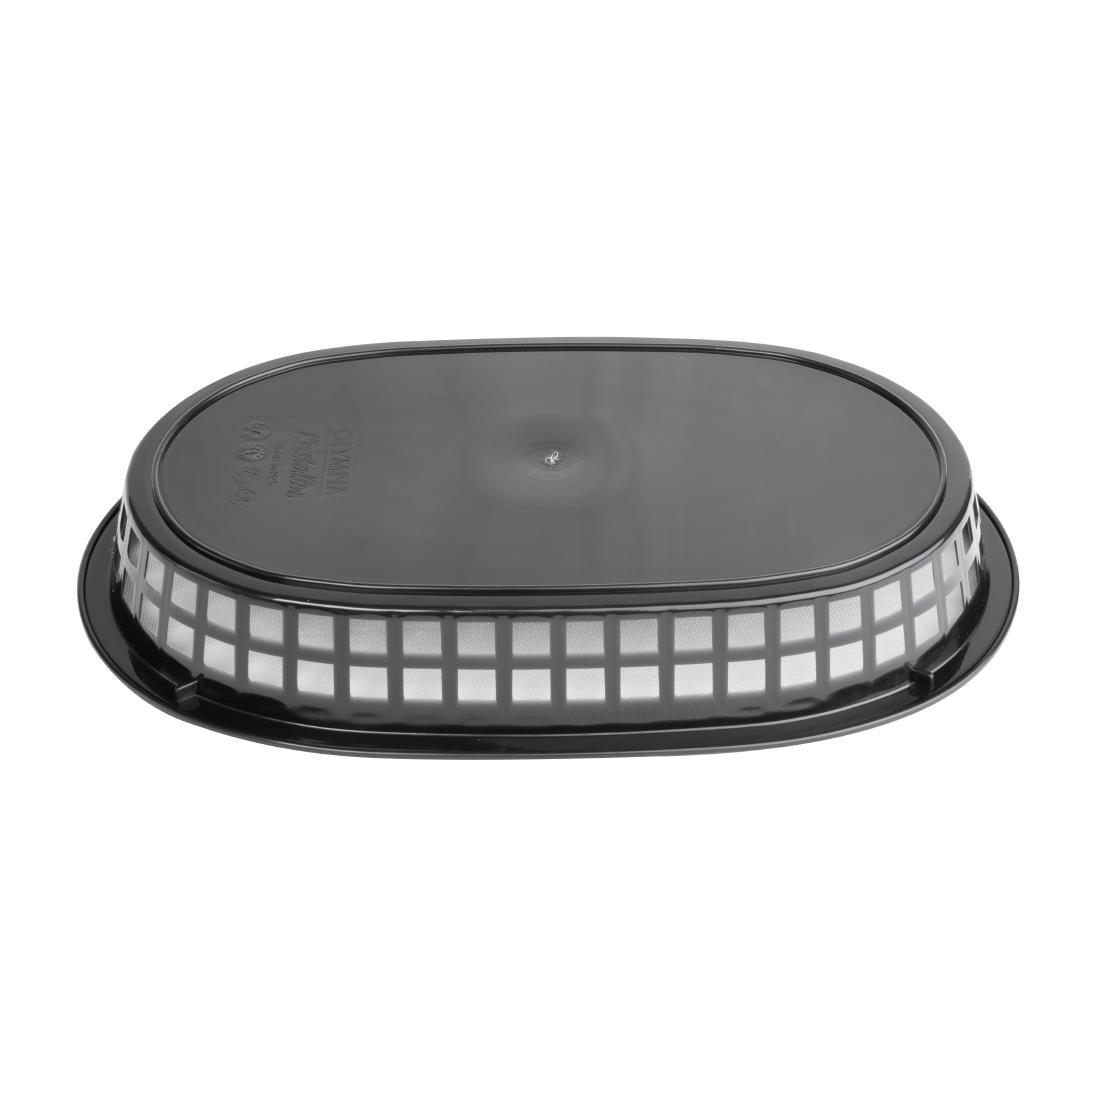 Oval Polypropylene Food Basket Black (Pack of 6) - GH969  - 3